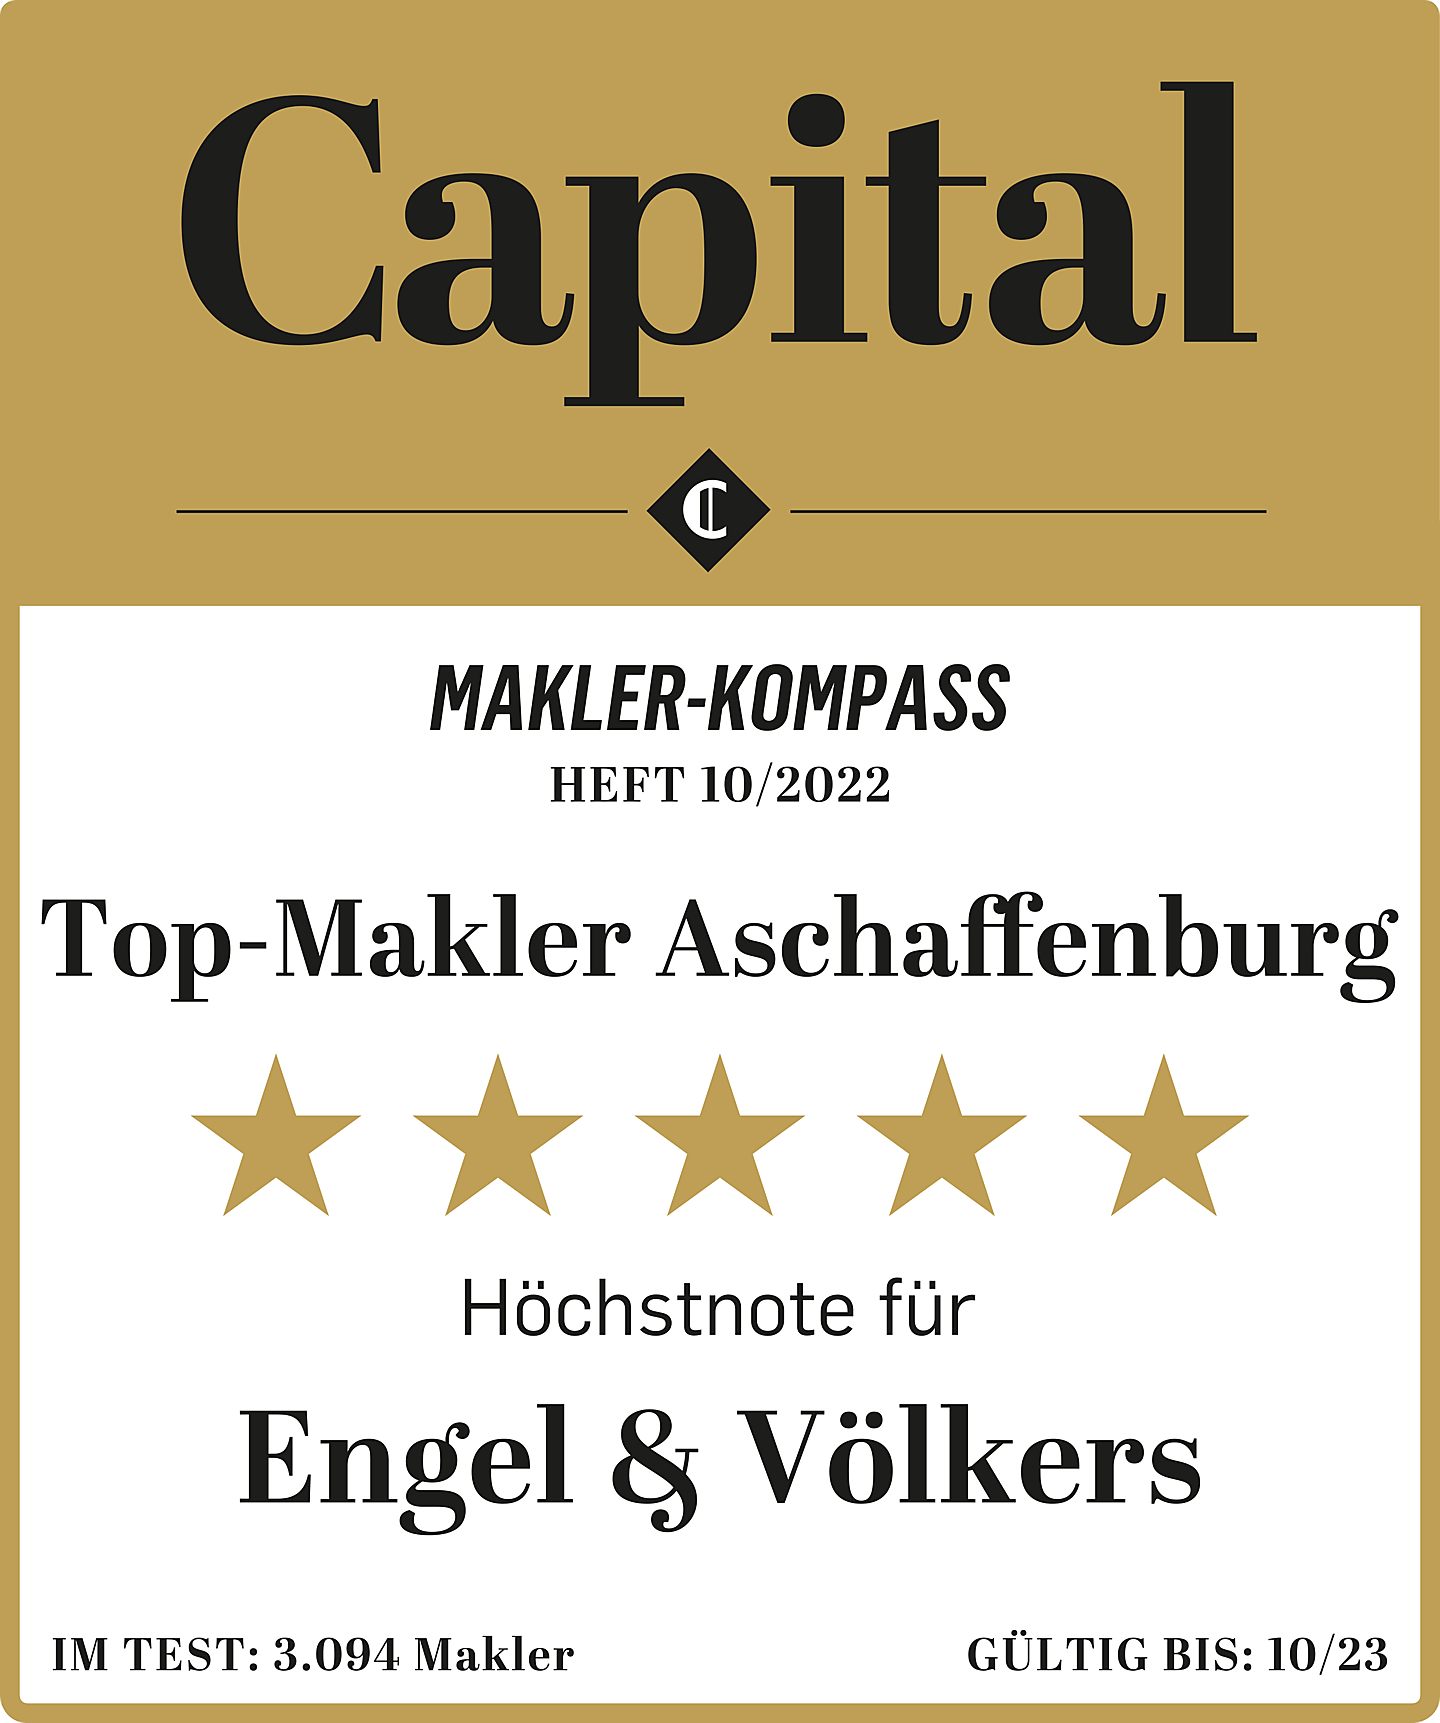  Aschaffenburg
- CAP_1022_Makler-Kompass_Engel_&_Völkers.jpg